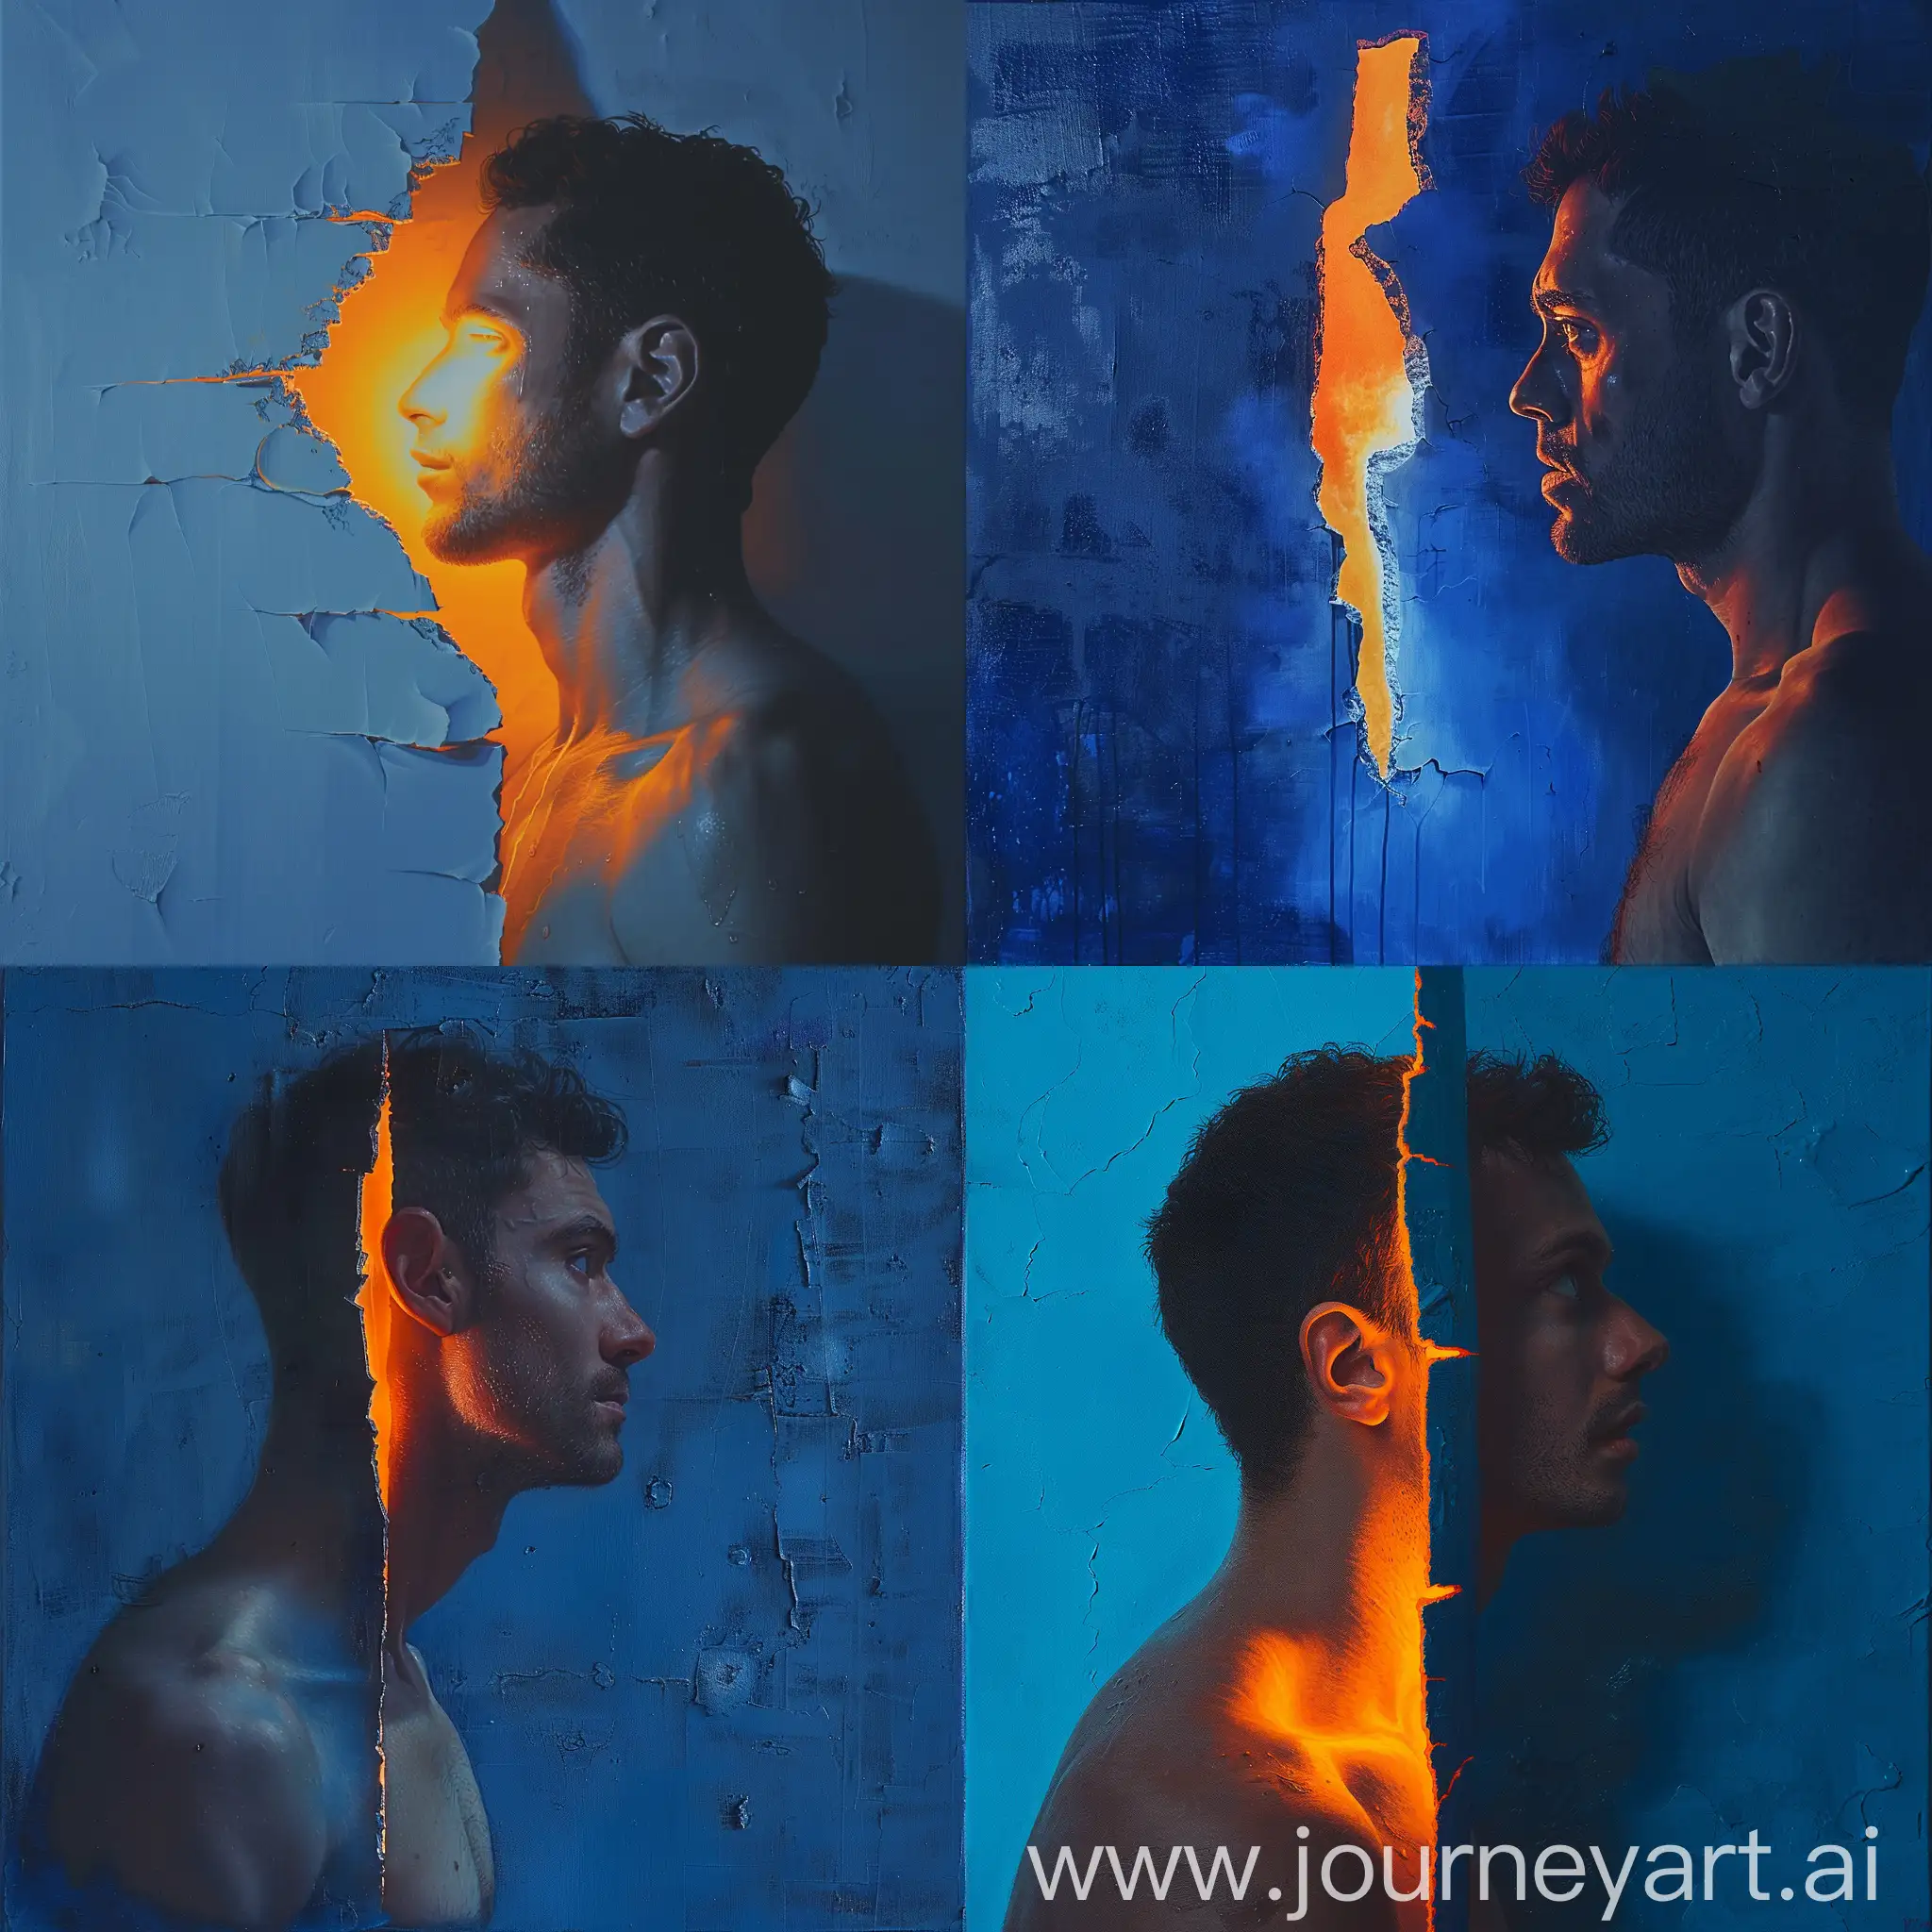 Intense-Gaze-Through-Torn-Blue-Canvas-Shirtless-Man-Bathed-in-Orange-Light